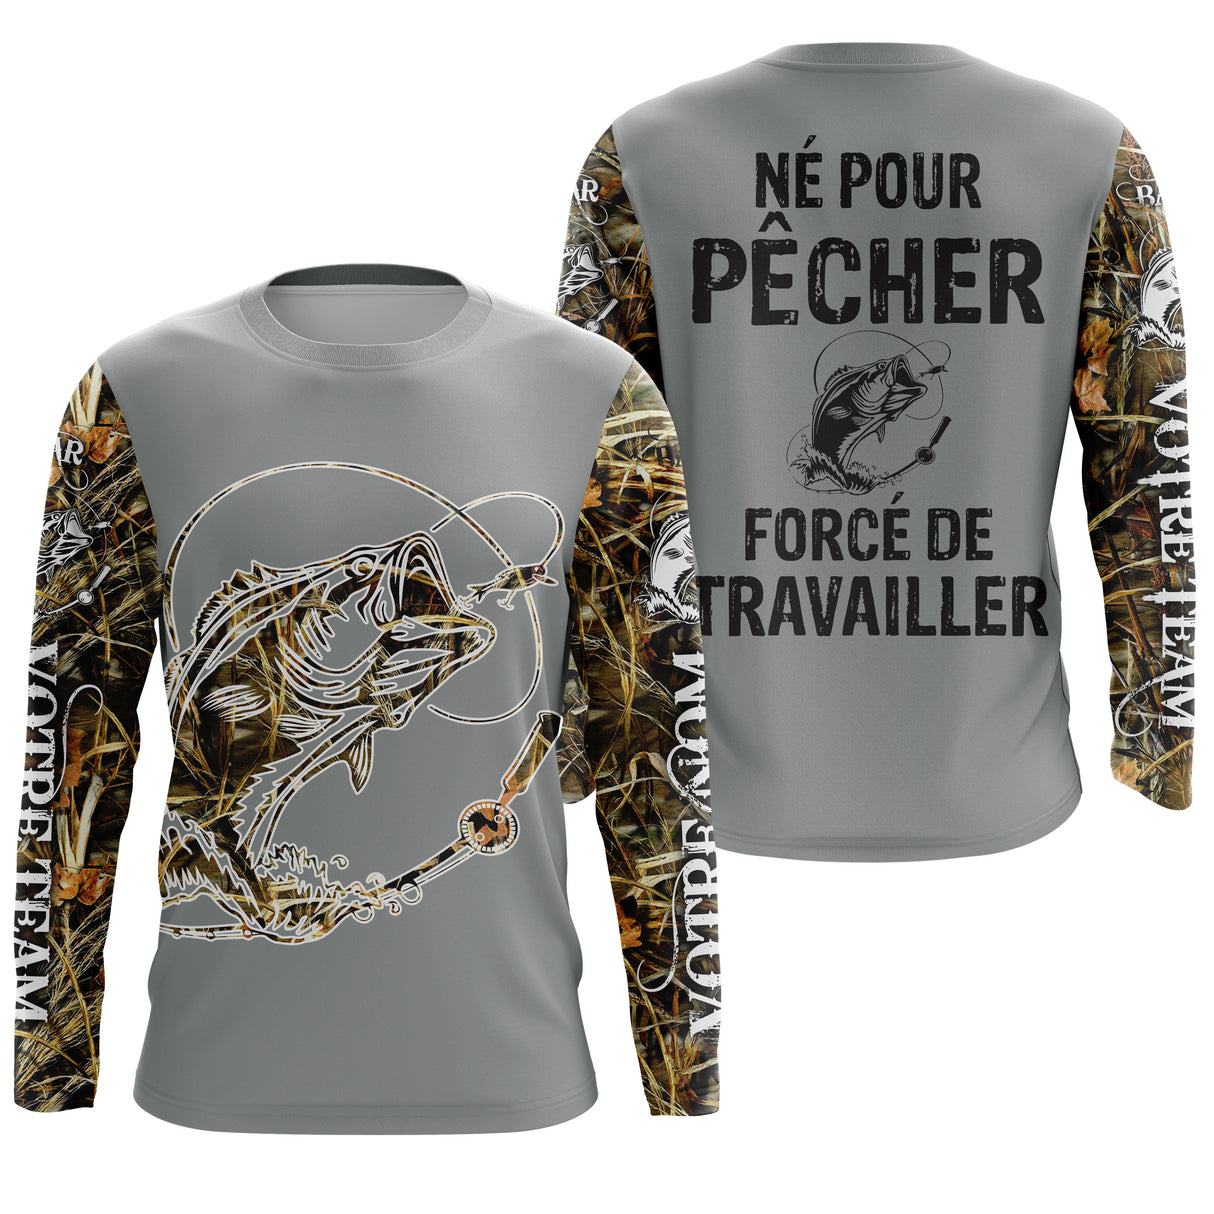 T-shirt Humour Pêche Du Bar - Écologique et Durable - Style et Confort Pour Pêcheur - CT24072022 T-shirt Anti UV Manches Longues Unisexe Gris